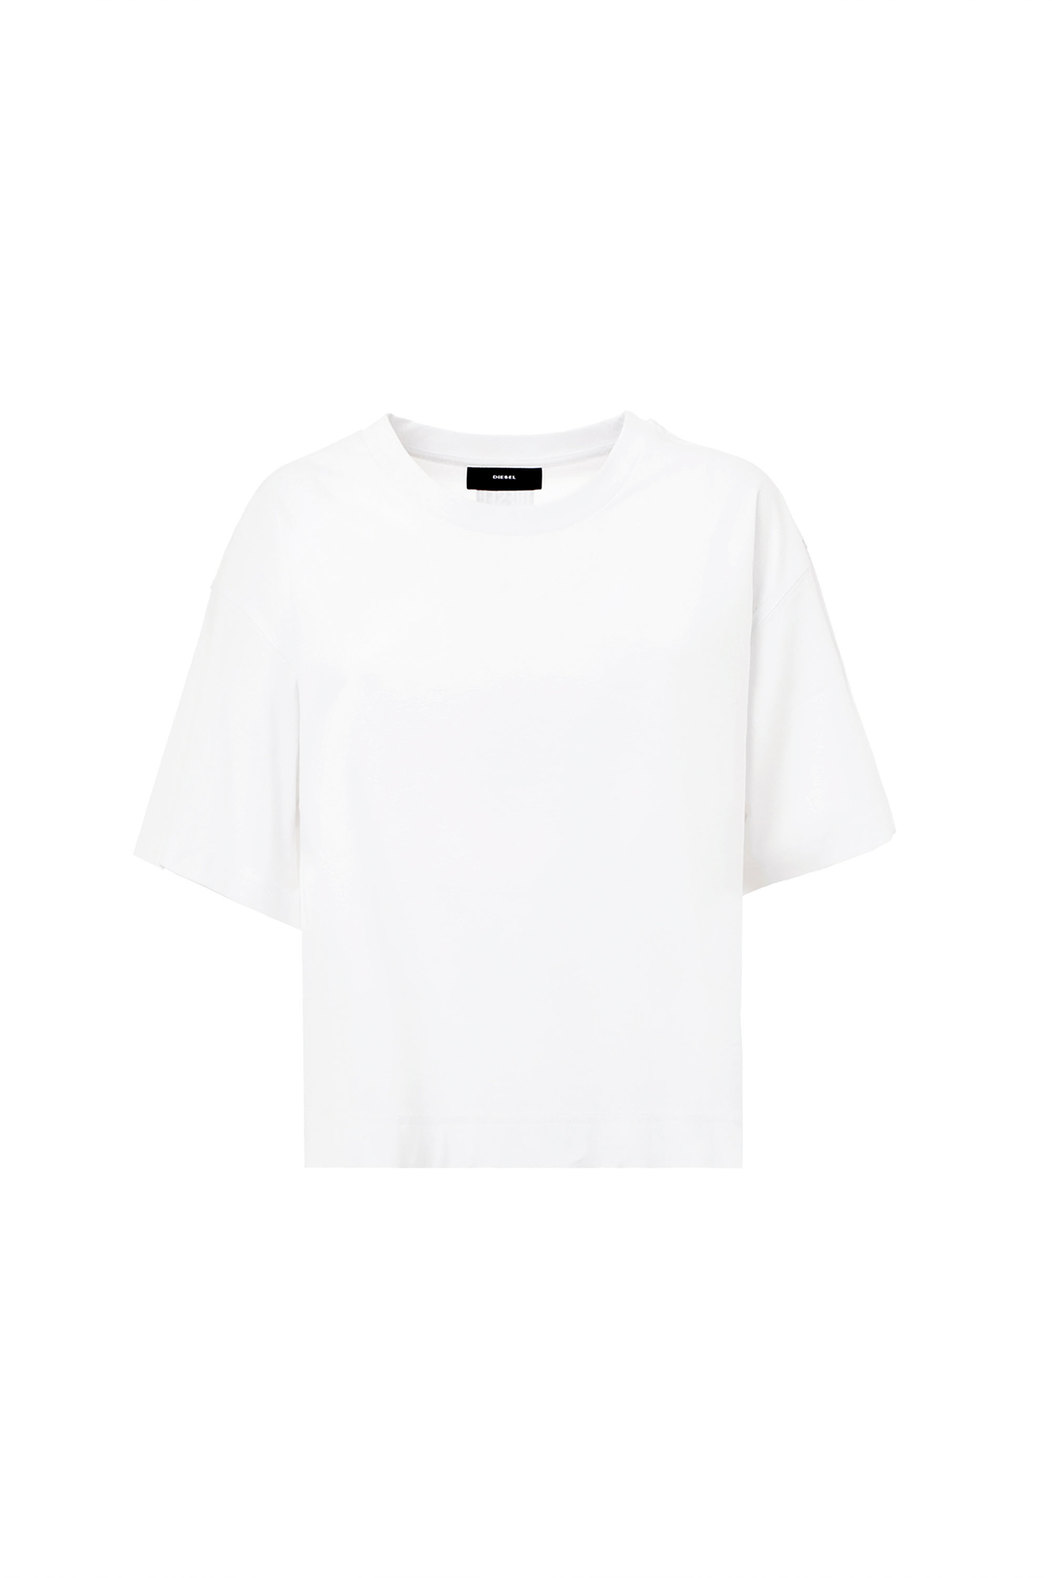 T-shirt in Polygiene ViralOff® fabric